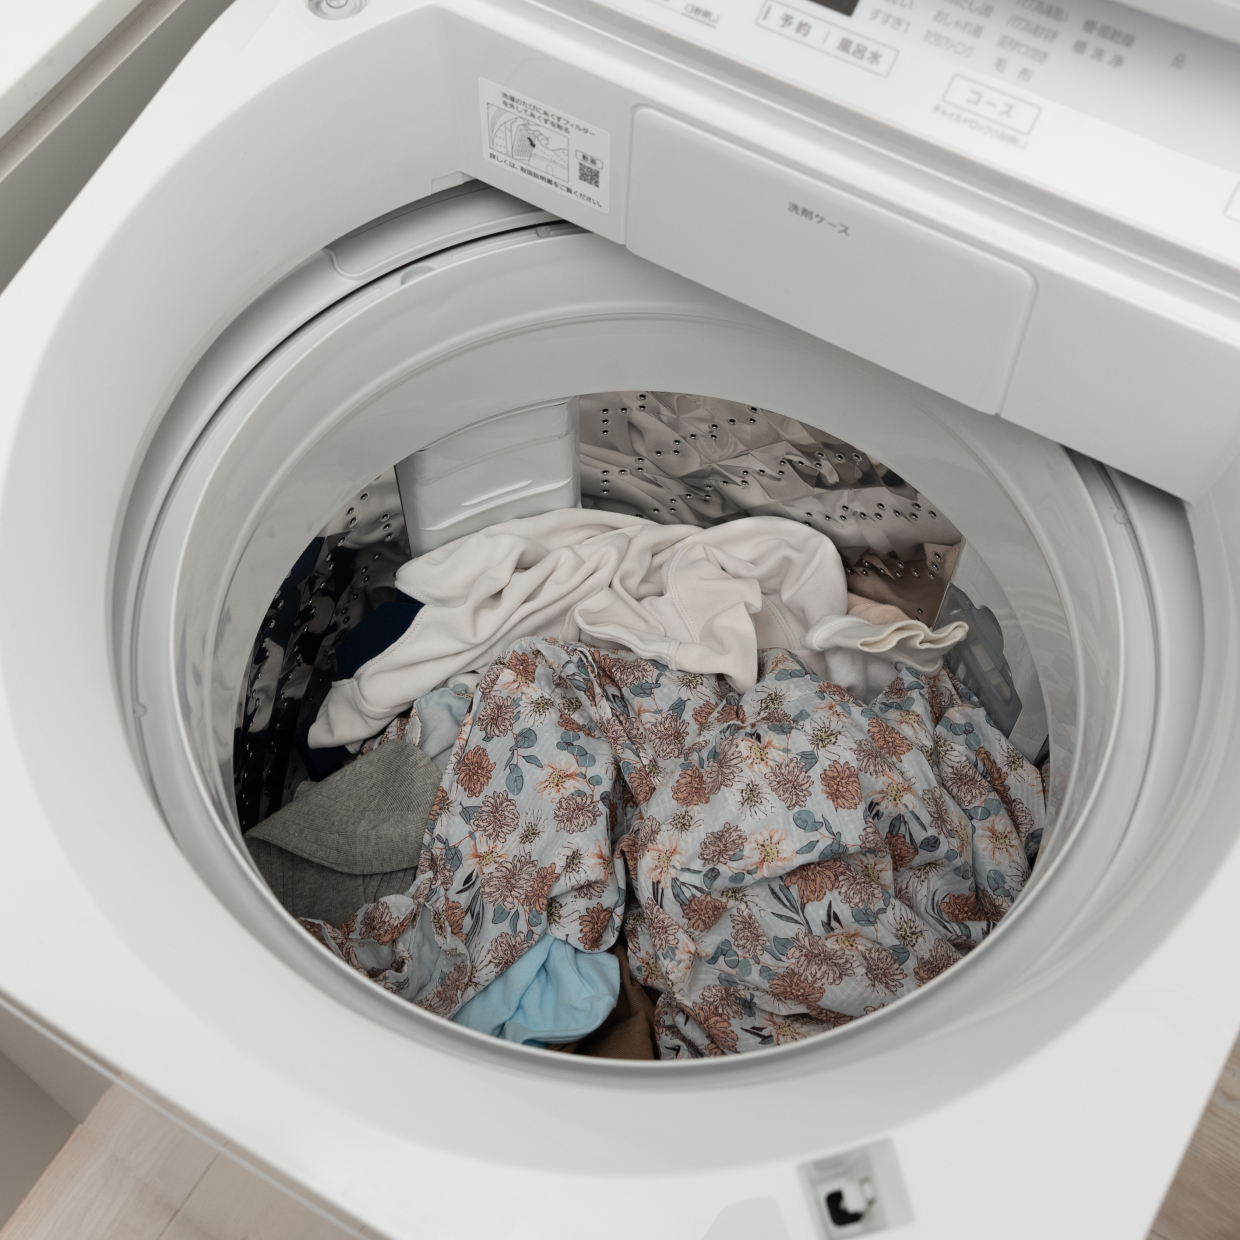  洗濯機に「干し忘れた洗濯物」は“雑菌”だらけかも…。そのまま干してもいい“タイムリミット”とは 